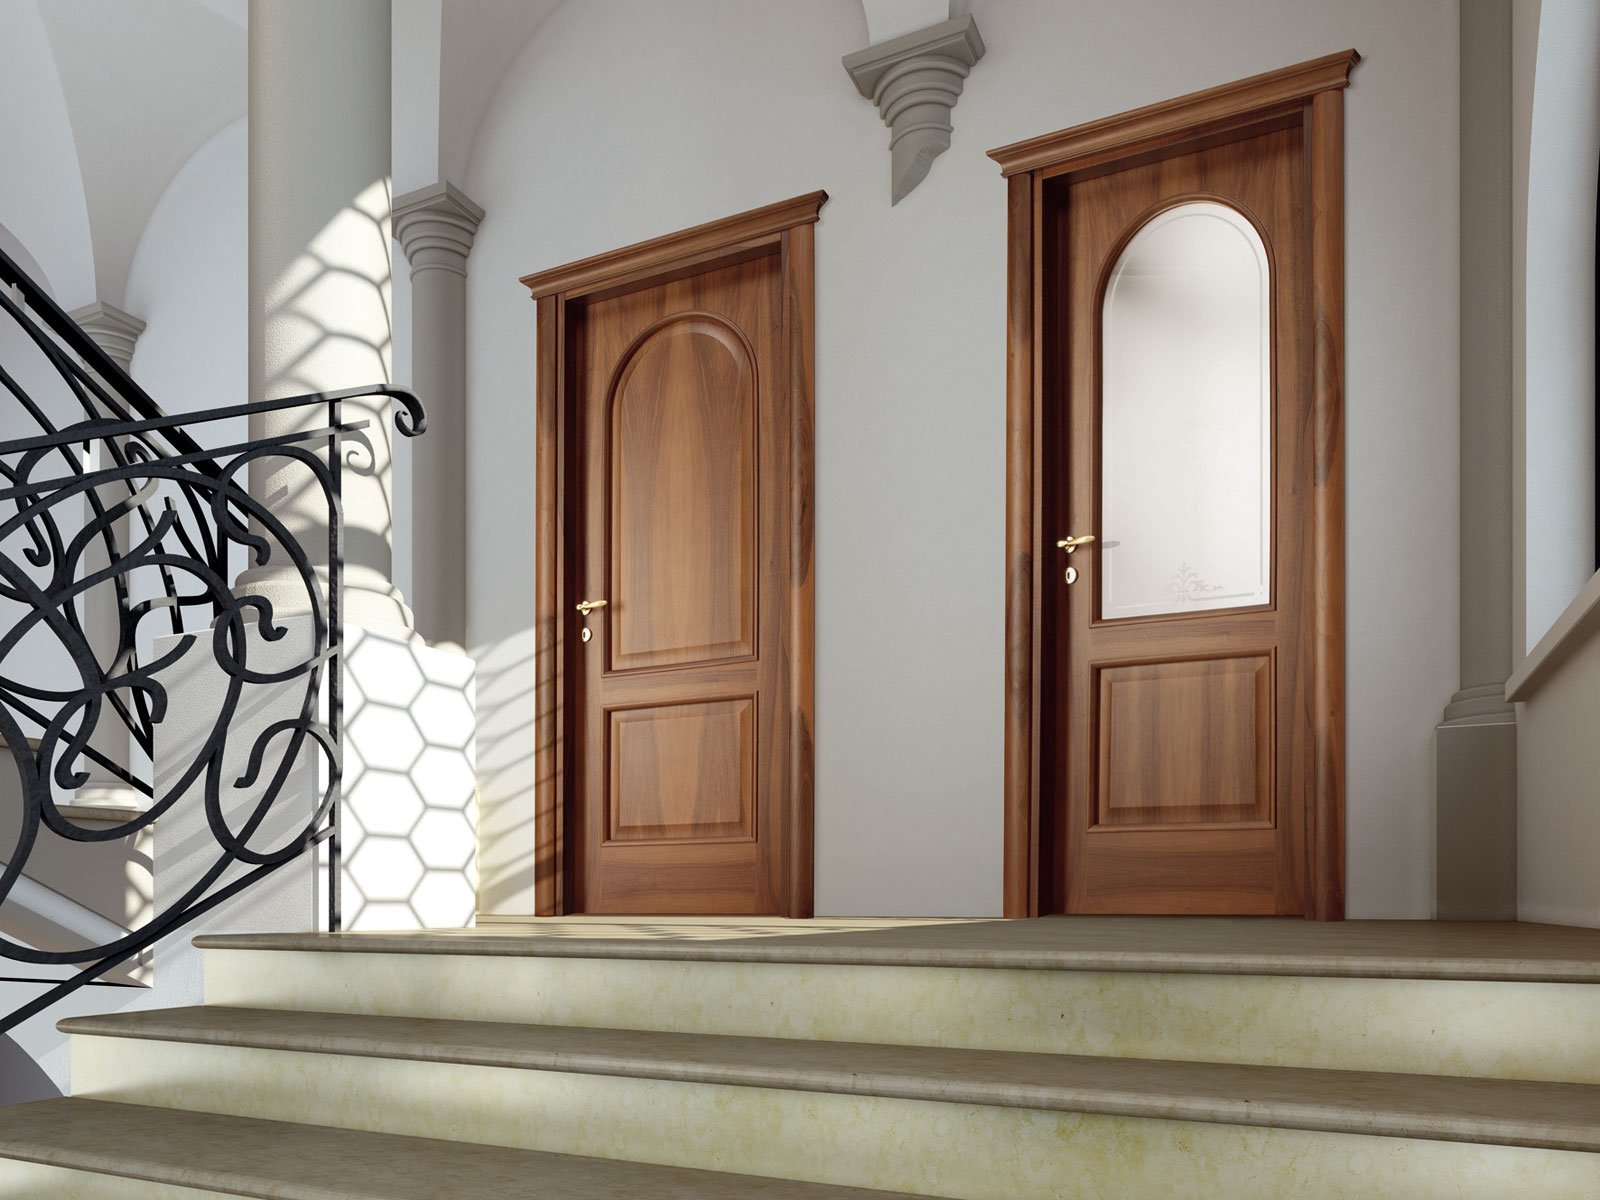 Сайт межкомнатные двери москве. Межкомнатные двери Ghizzi Benatti. Классические деревянные двери. Массивная дверь. Деревянные двери классика.